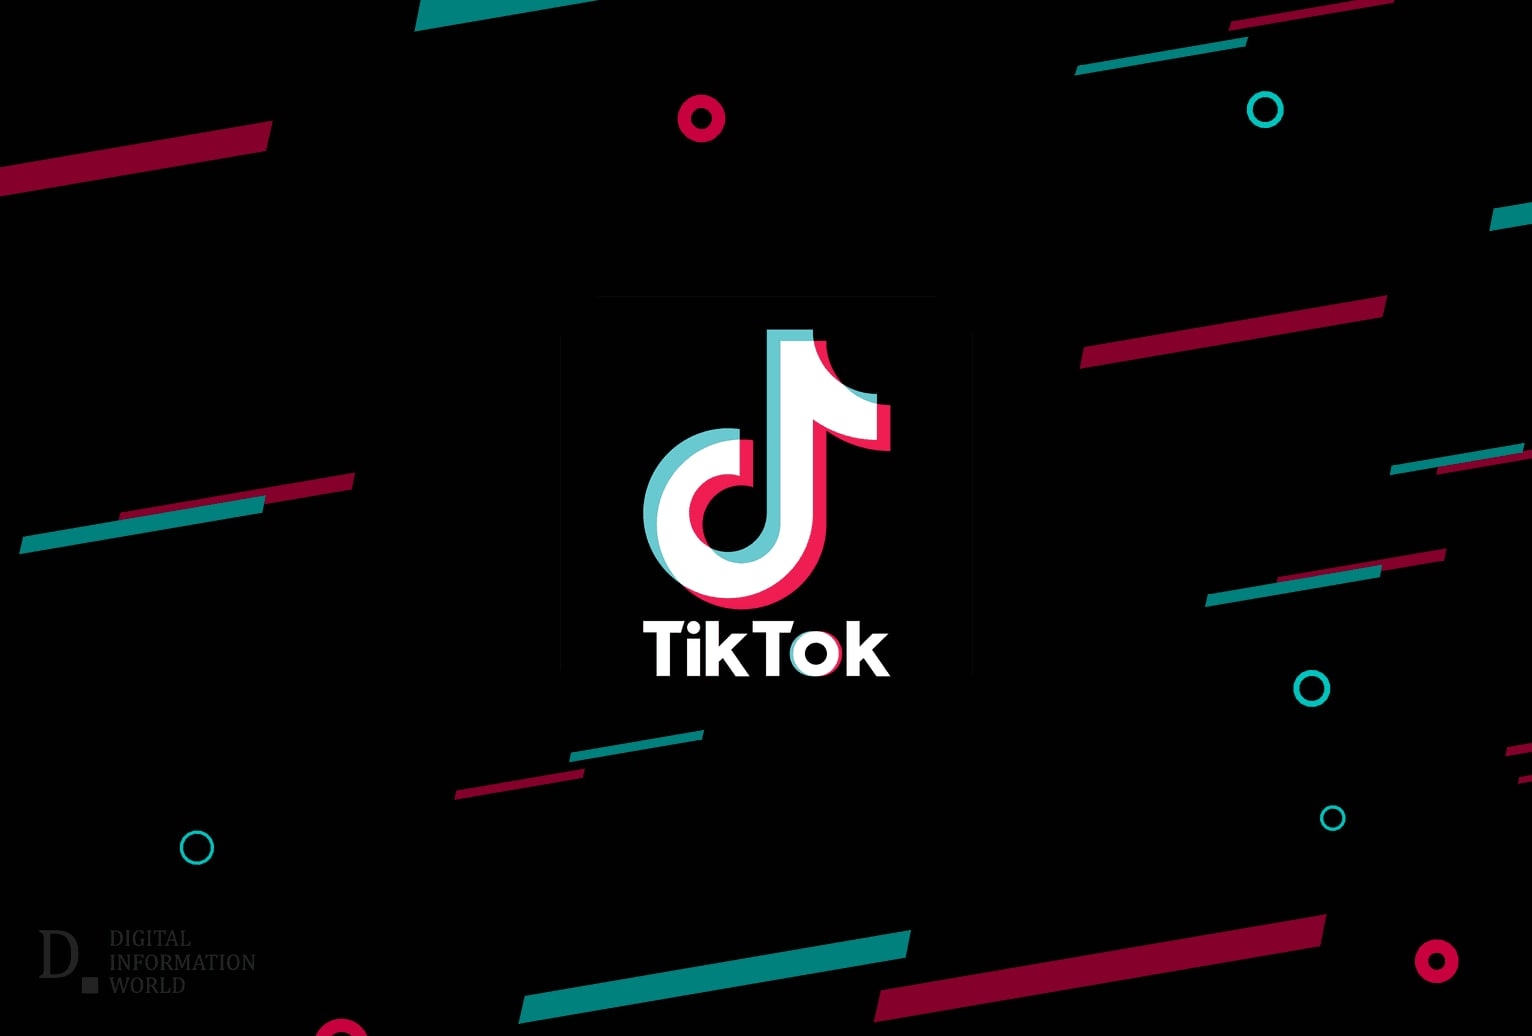 По заявлениям основных операторов связи и на основании анализа трафика и несмотря на то, что функционирование социальной сети TikTok сильно ограничено в нашей стране - количество российских пользователей не уменьшается.